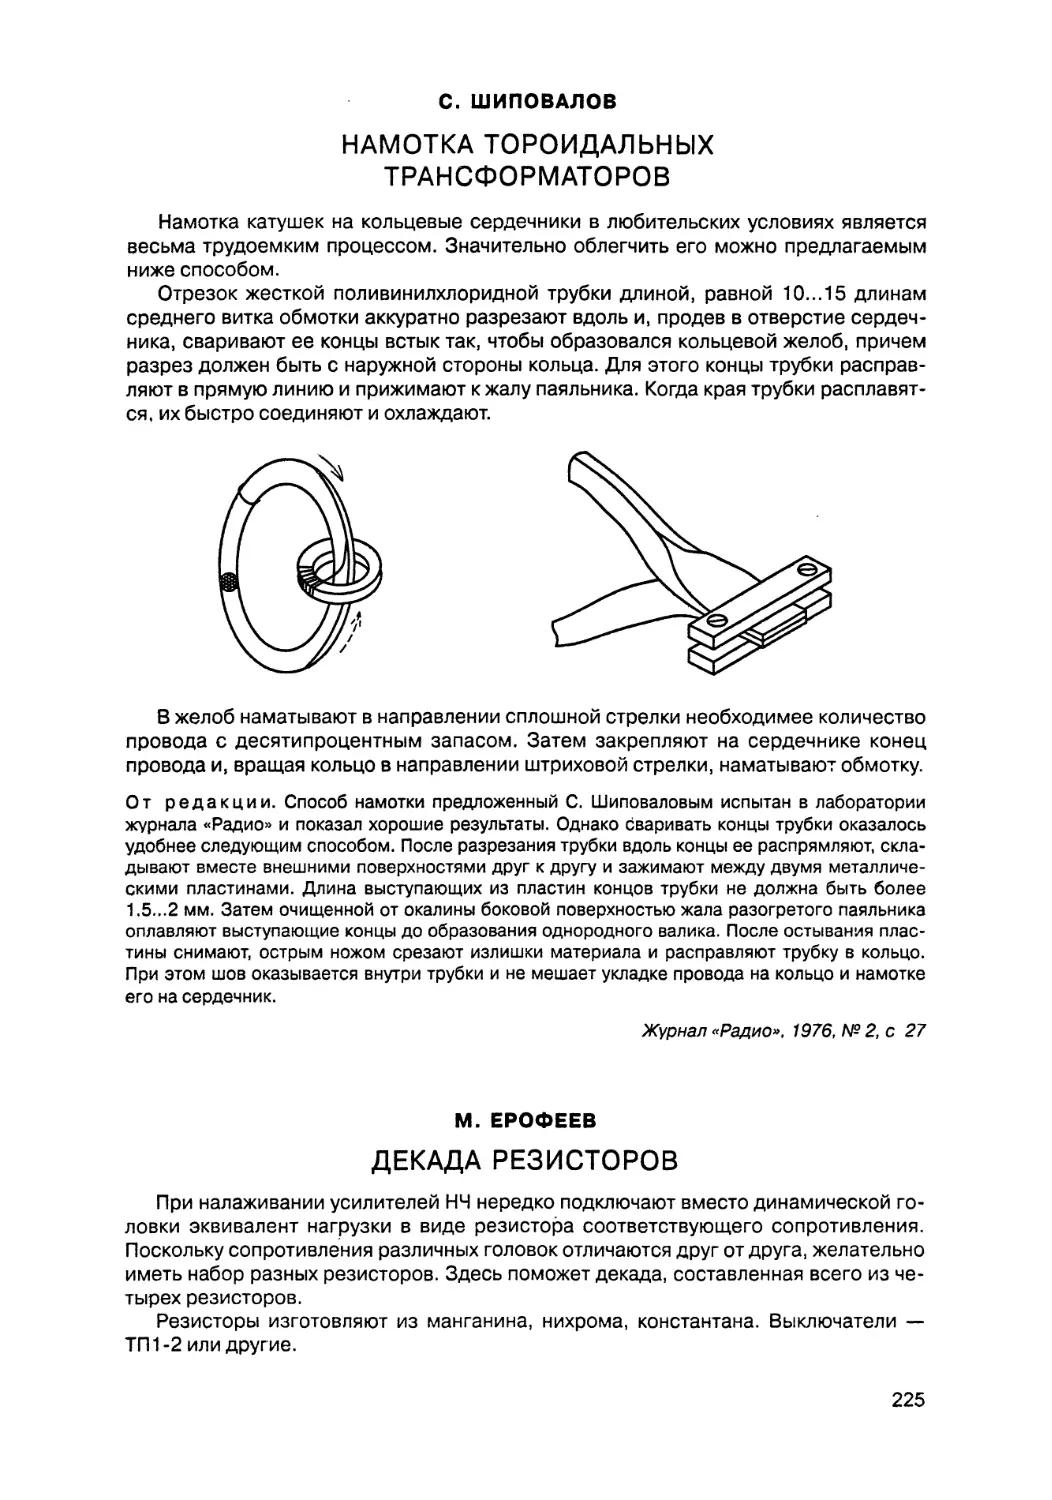 Намотка тороидальных трансформаторов
Декада резисторов